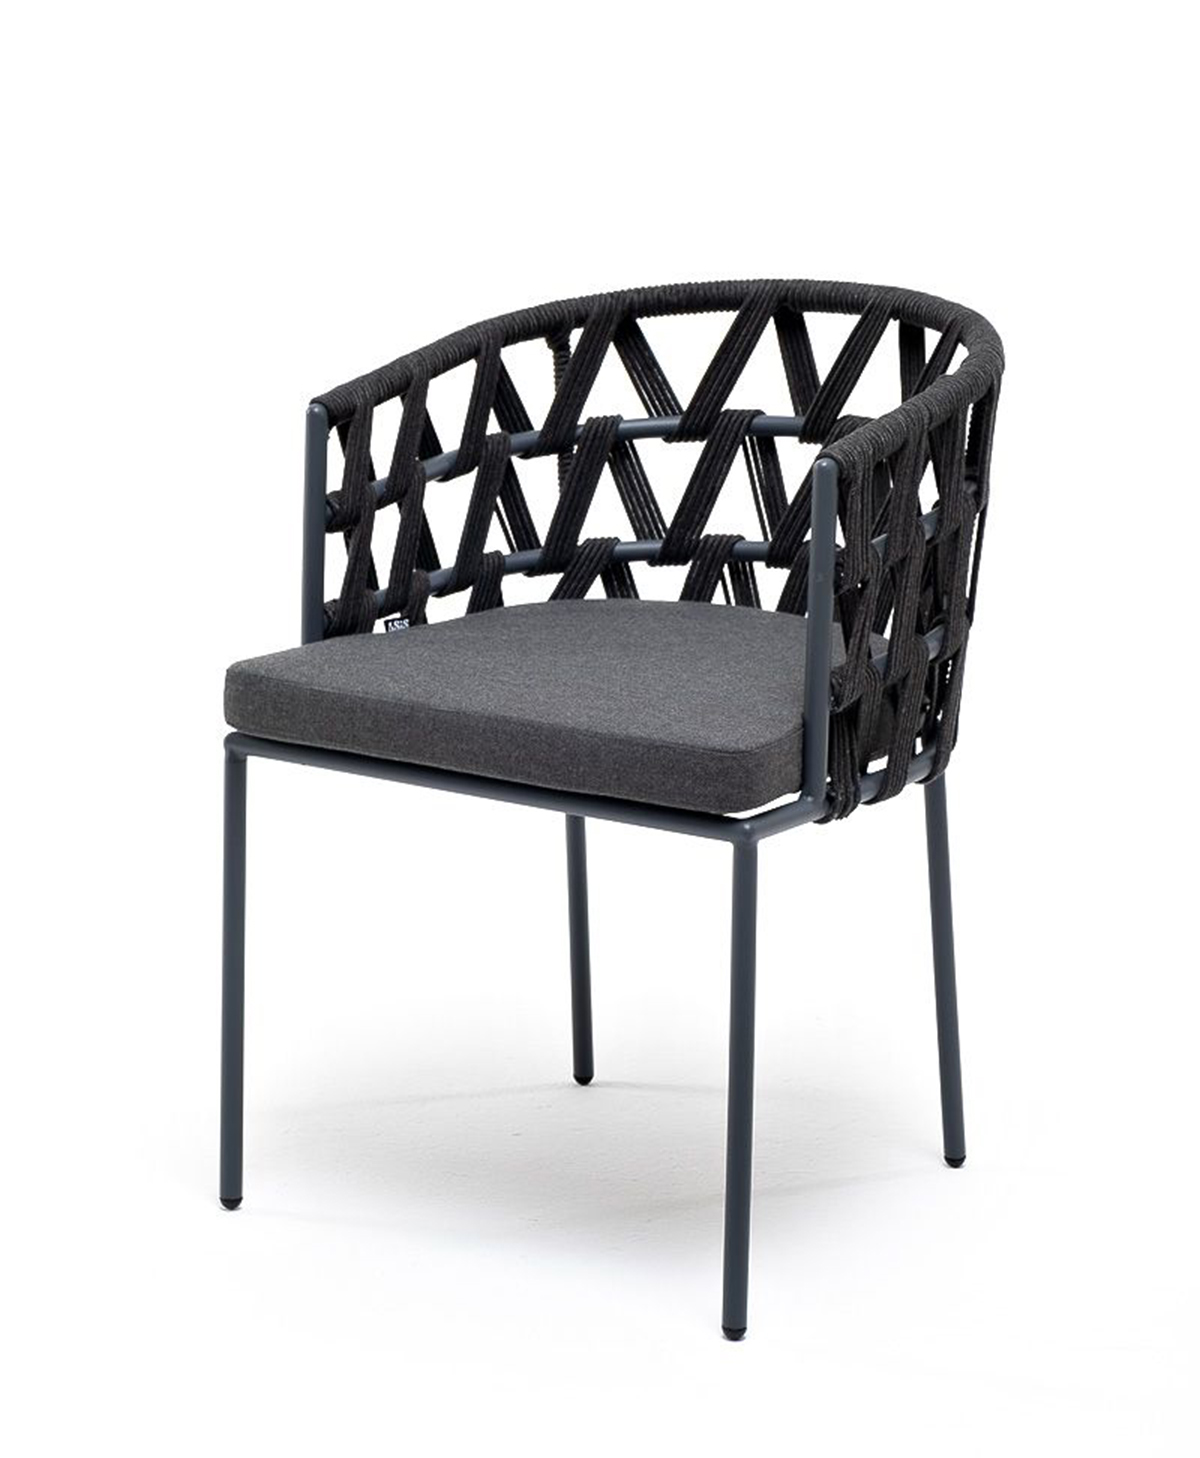 Плетеный стул из роупа Диего темно-серый